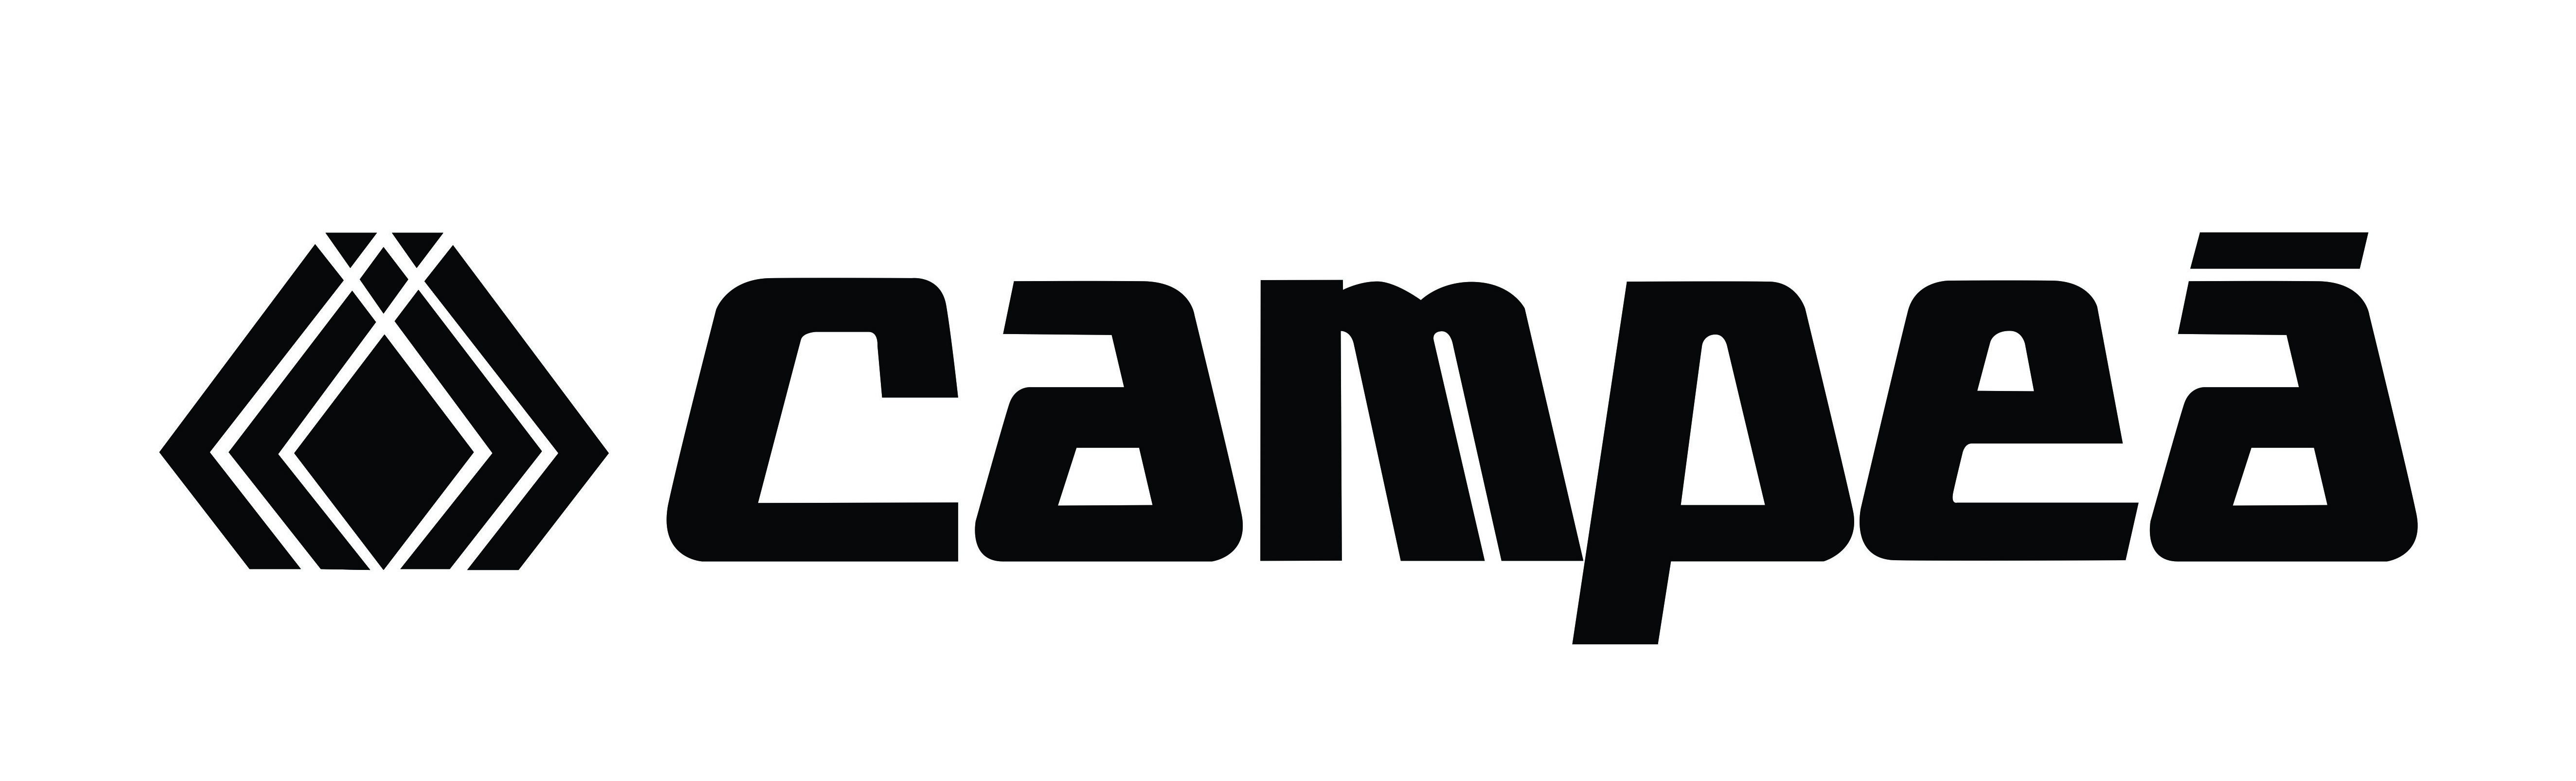 Campea - Logos 1 - 2015-10-03